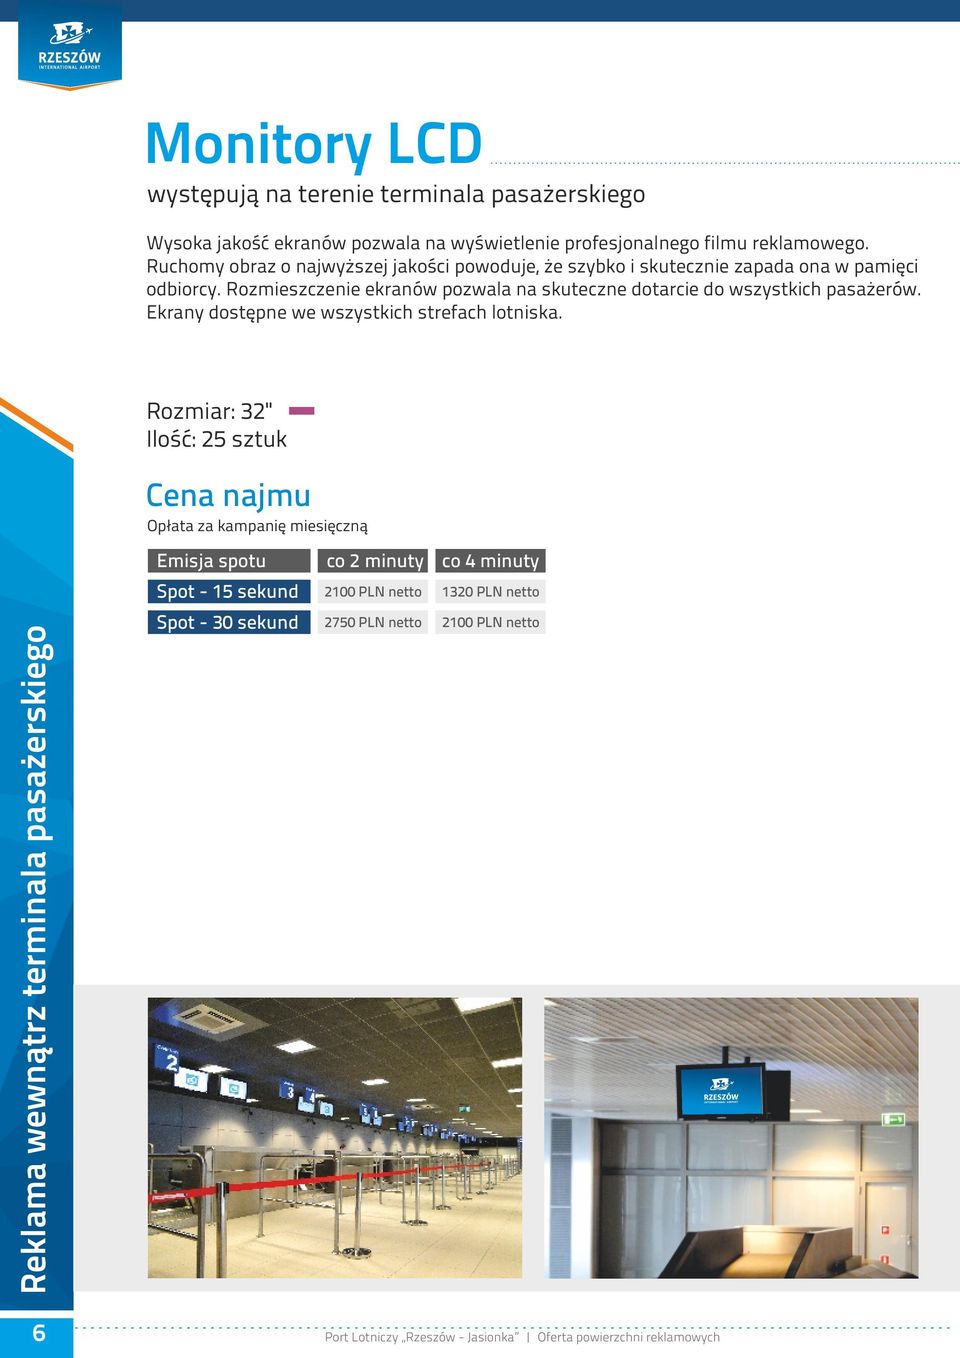 Rozmieszczenie ekranów pozwala na skuteczne dotarcie do wszystkich pasażerów. Ekrany dostępne we wszystkich strefach lotniska.